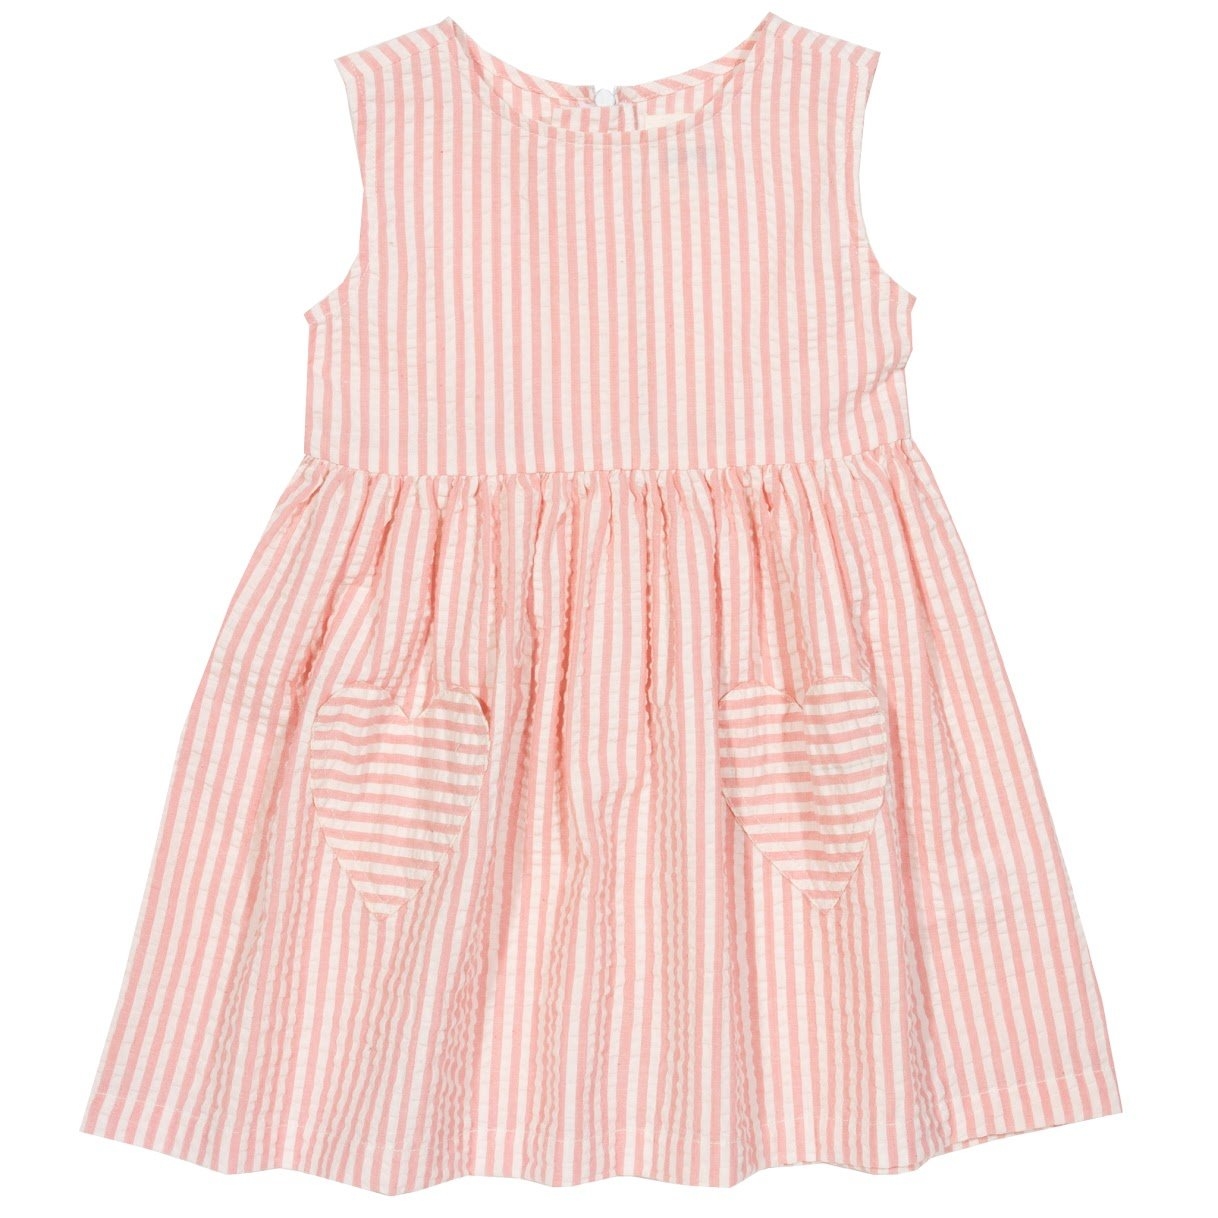 Kite Toddler Organic Cotton Pocket Dress – Pink – 18-24 months